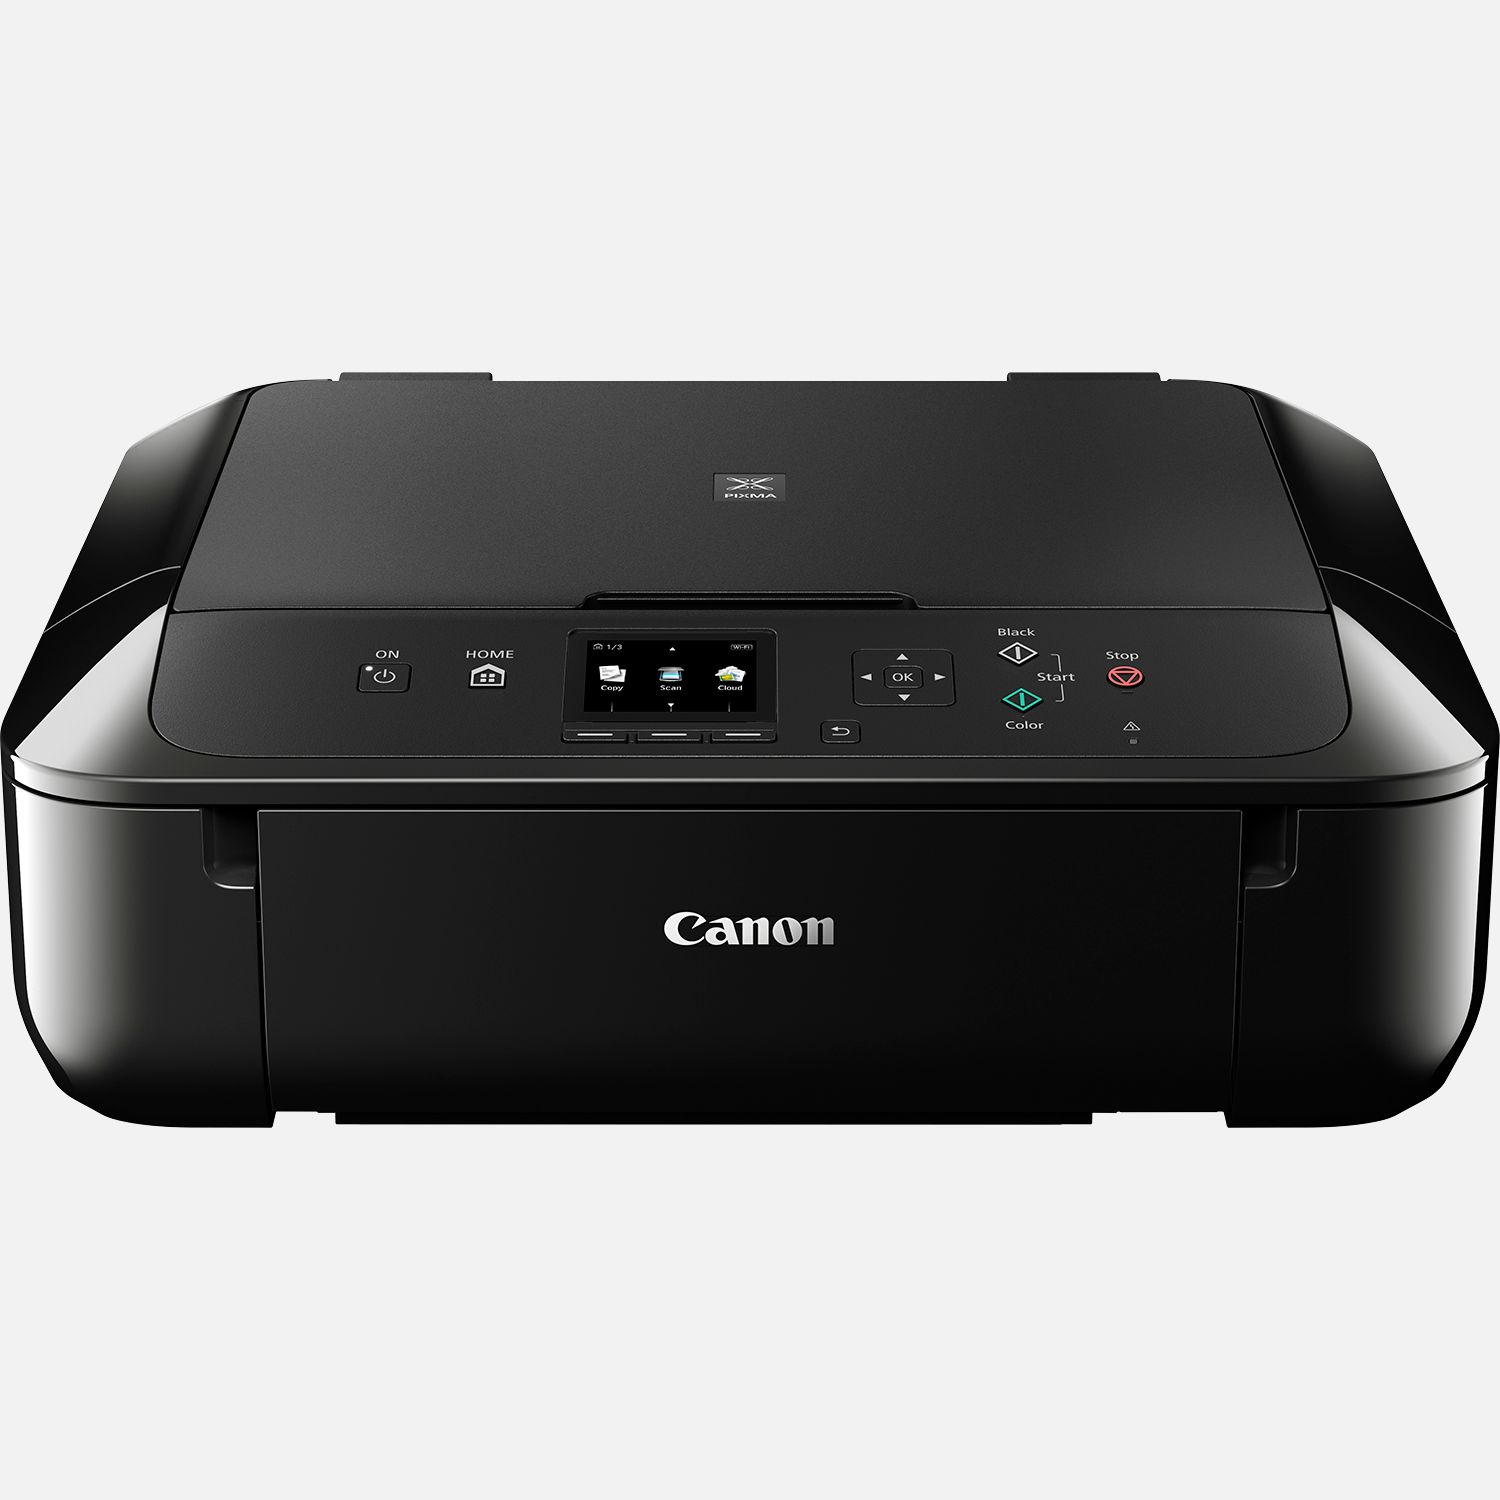 CANON - Imprimante multifonction jet d'encre Pixma MG5750 noir